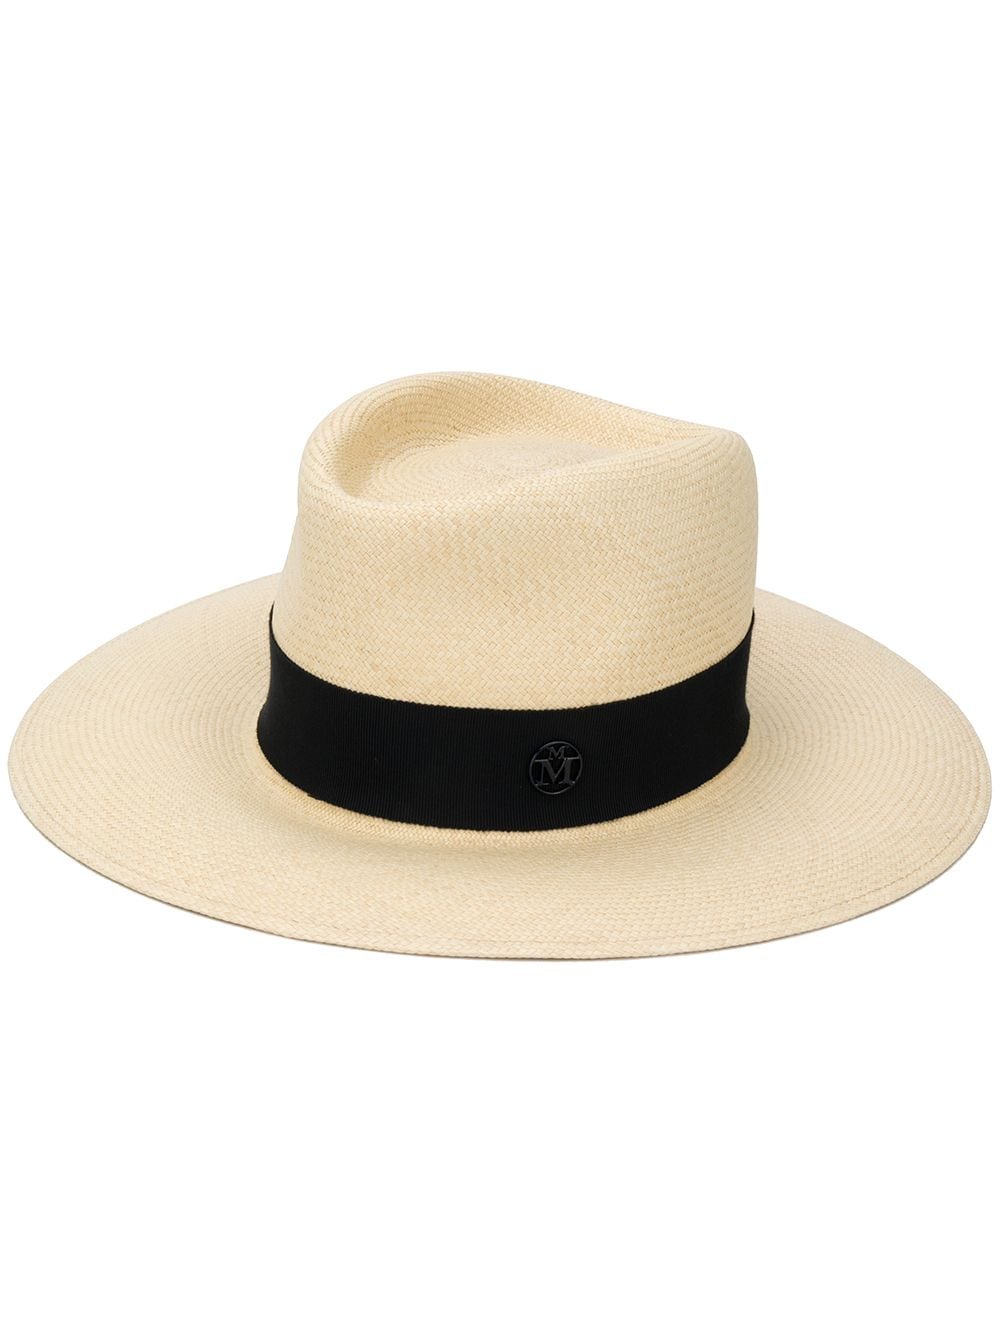 Maison Michel Charles straw Fedora hat - Neutrals von Maison Michel